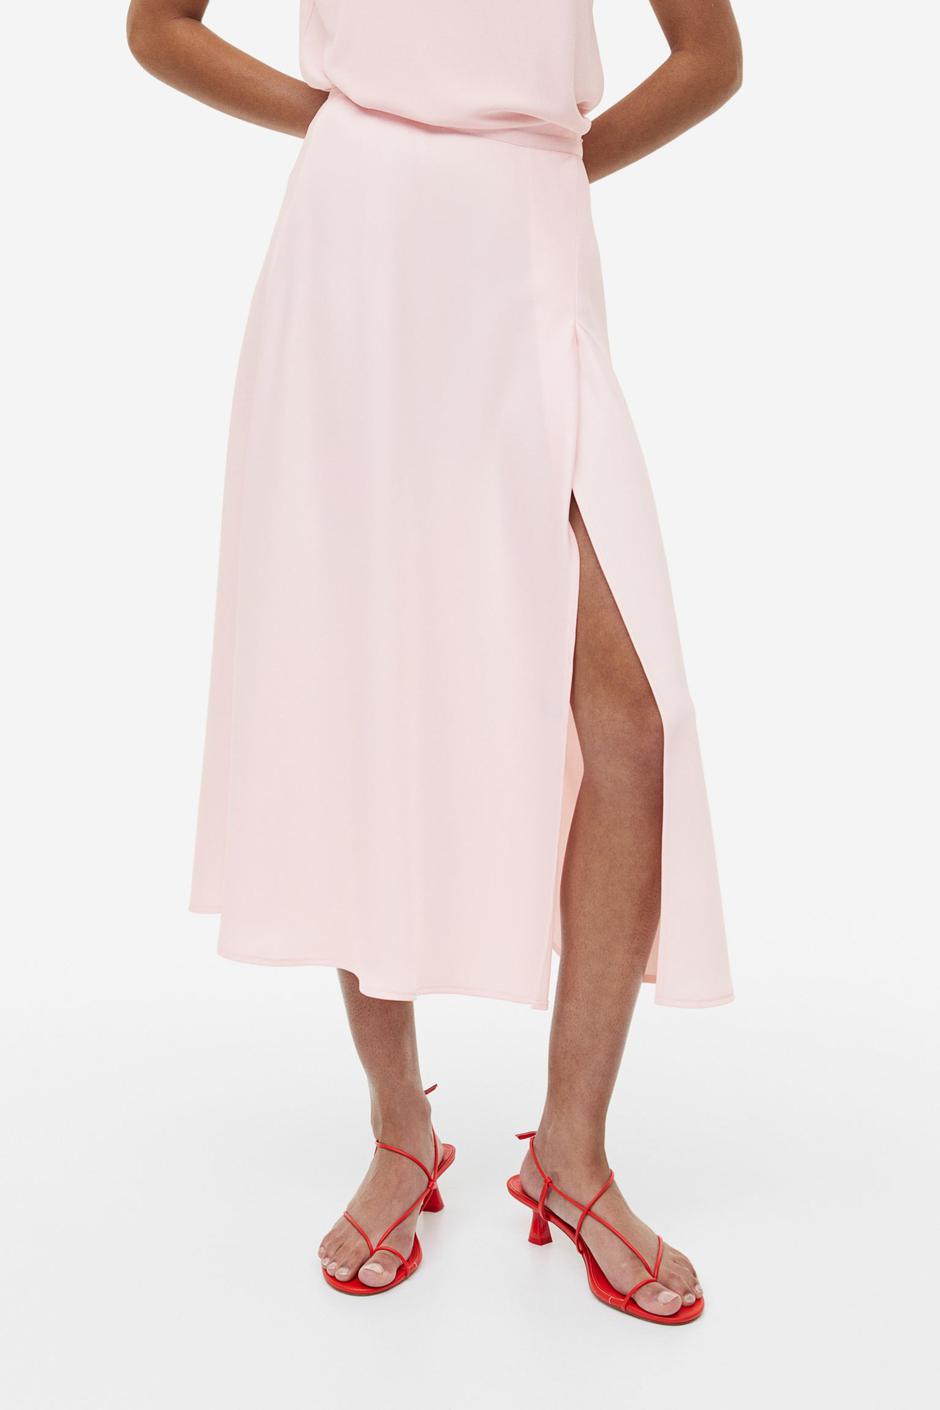 Foto: H&M, satenska suknja u svijetlo ružičastoj boji (34,99 eura) | Autor: 